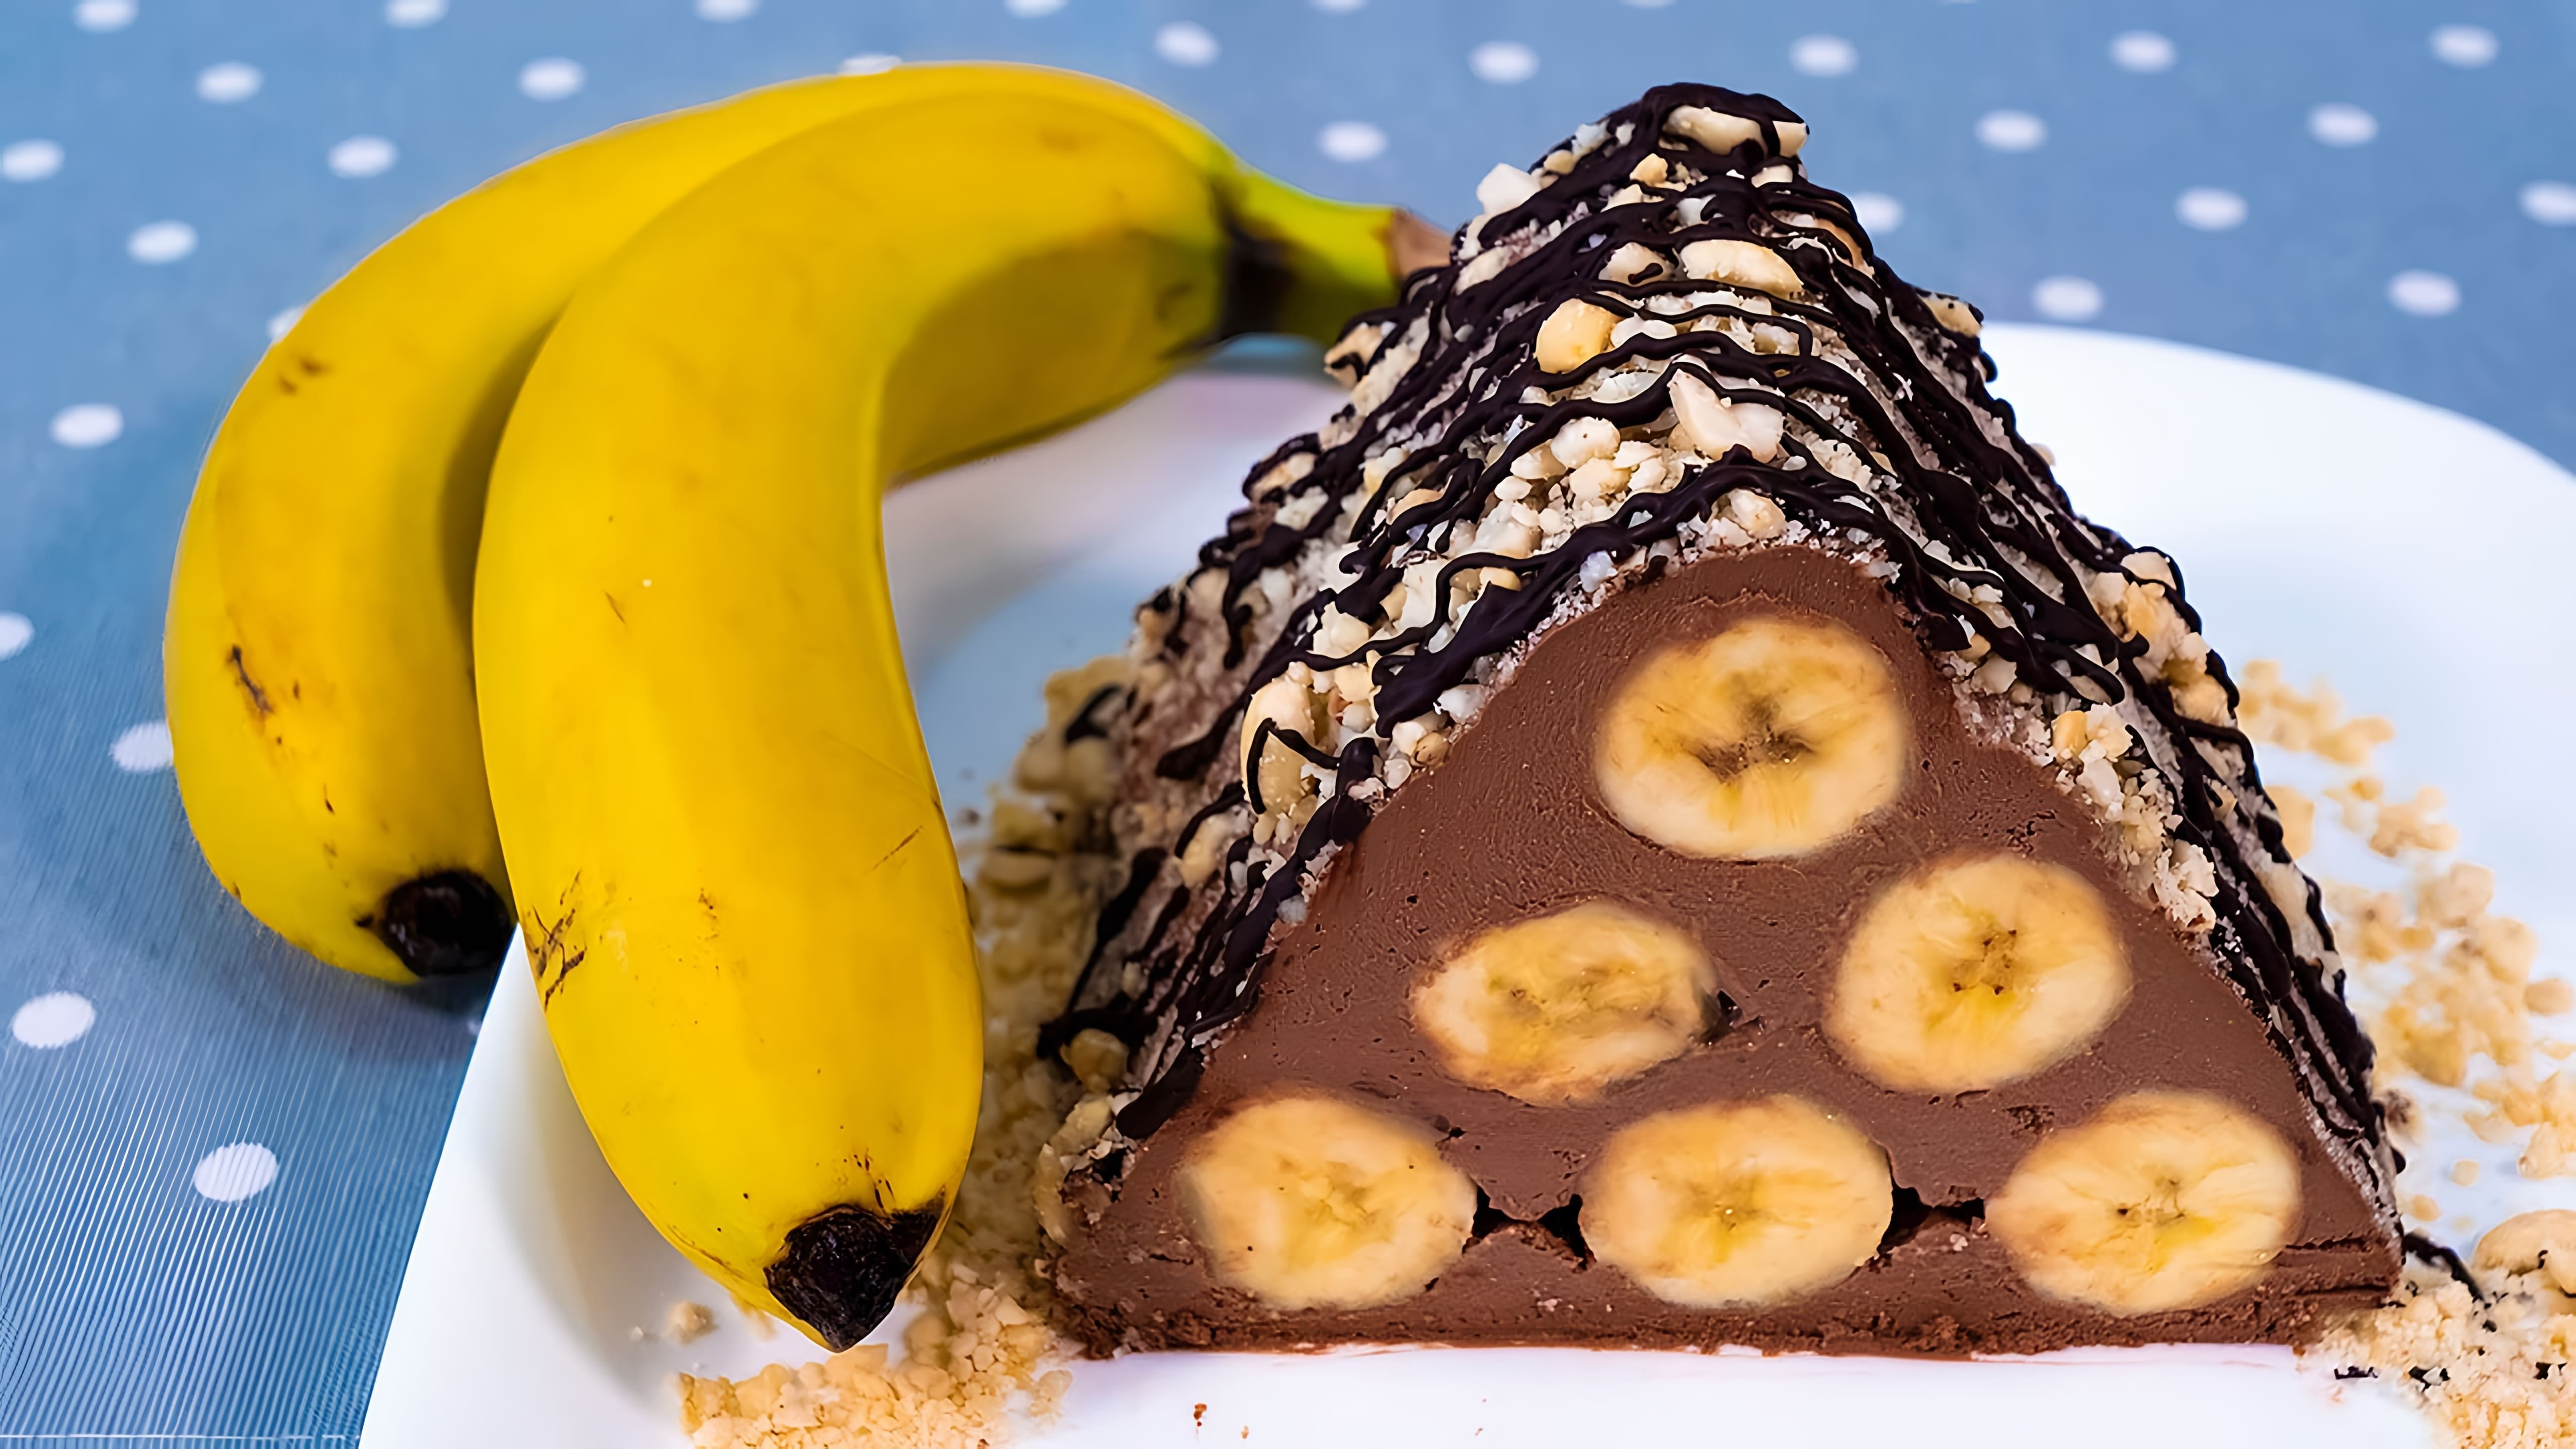 Видео как приготовить быстрый и простой шоколадно-банановый десерт без выпечки или готовки